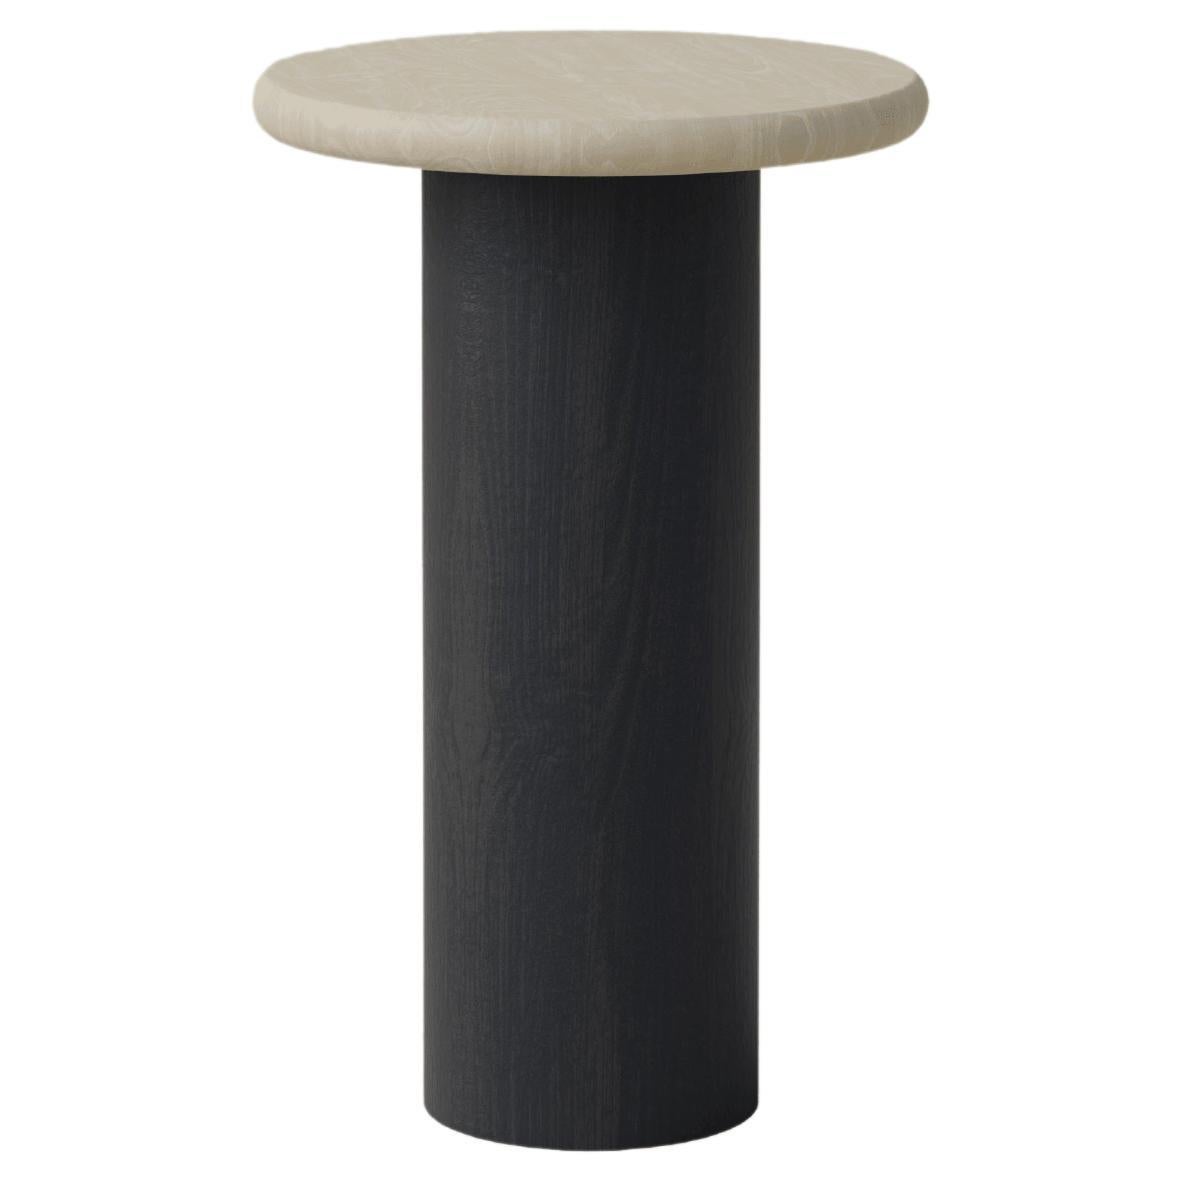 Table basse en forme de goutte d'eau, 300, frêne / chêne noir